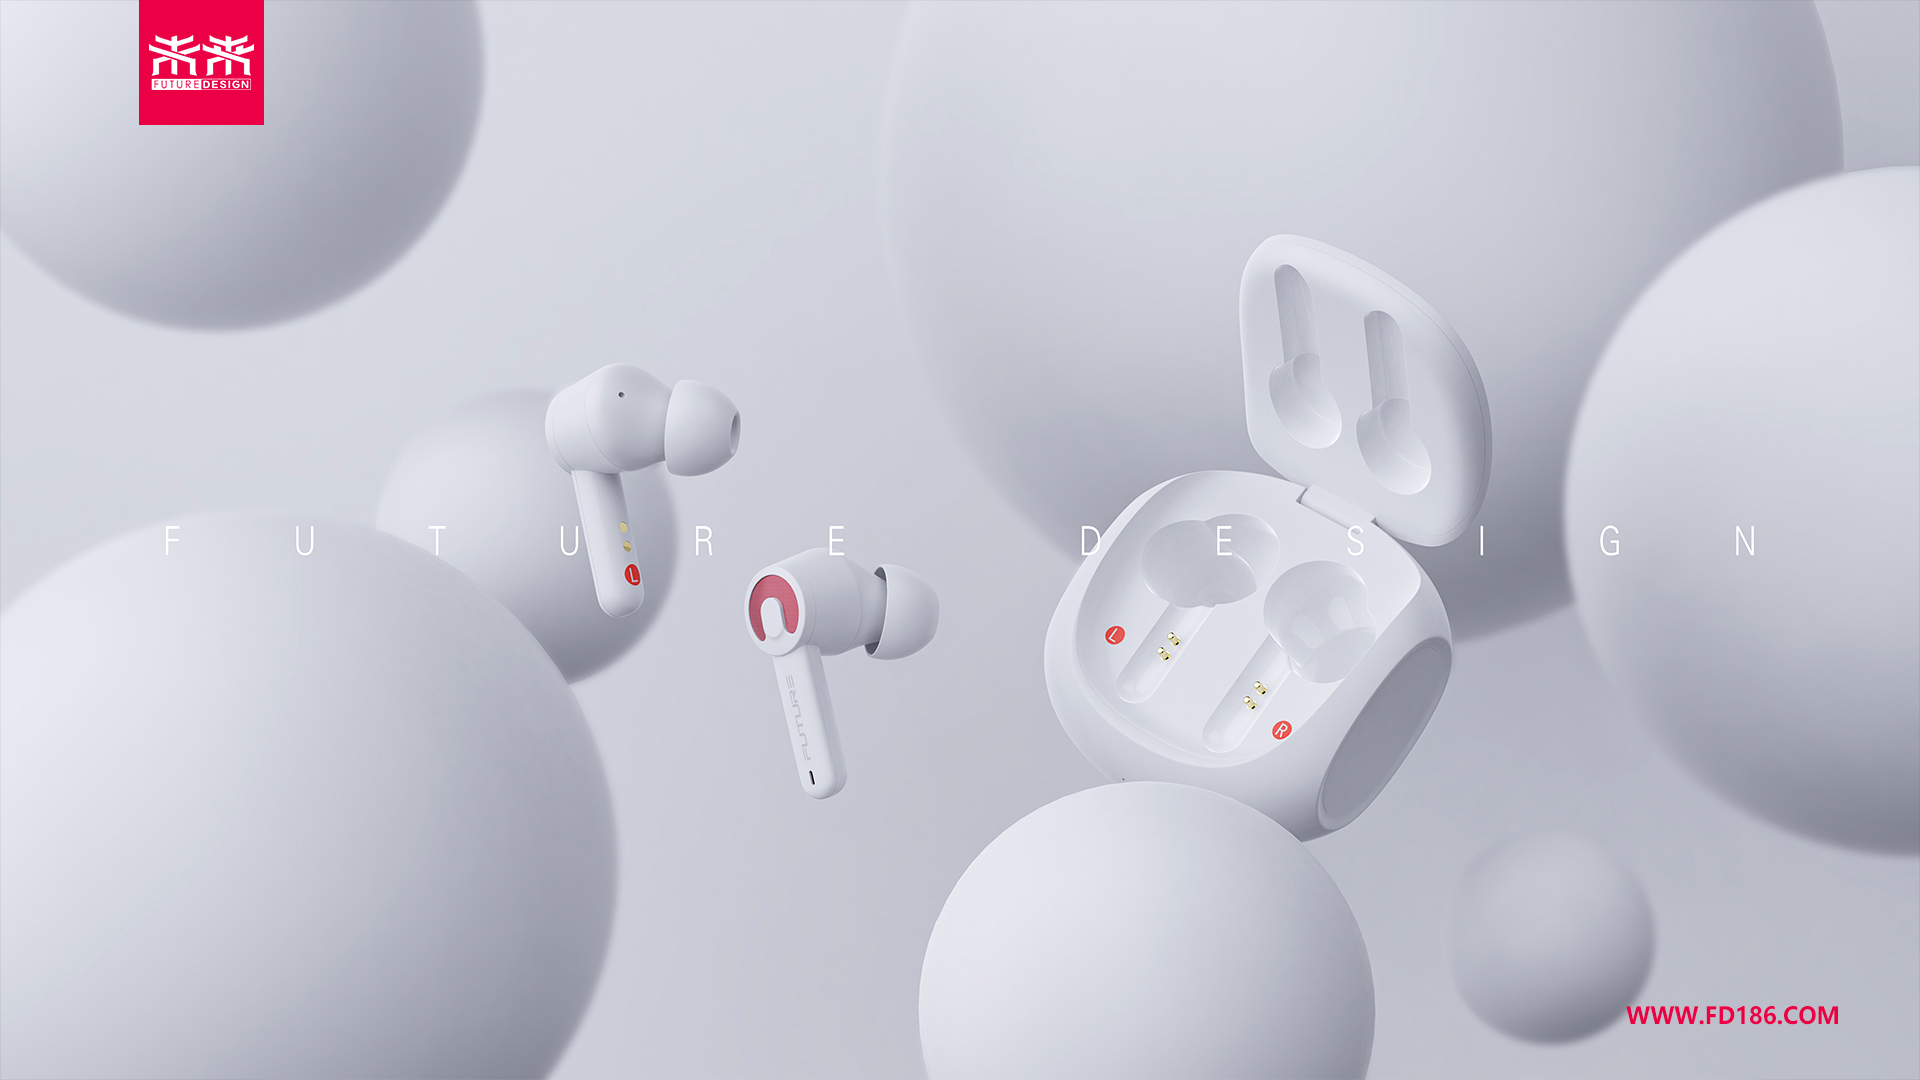 深圳工业设计公司未来设计案例-TWS蓝牙耳机